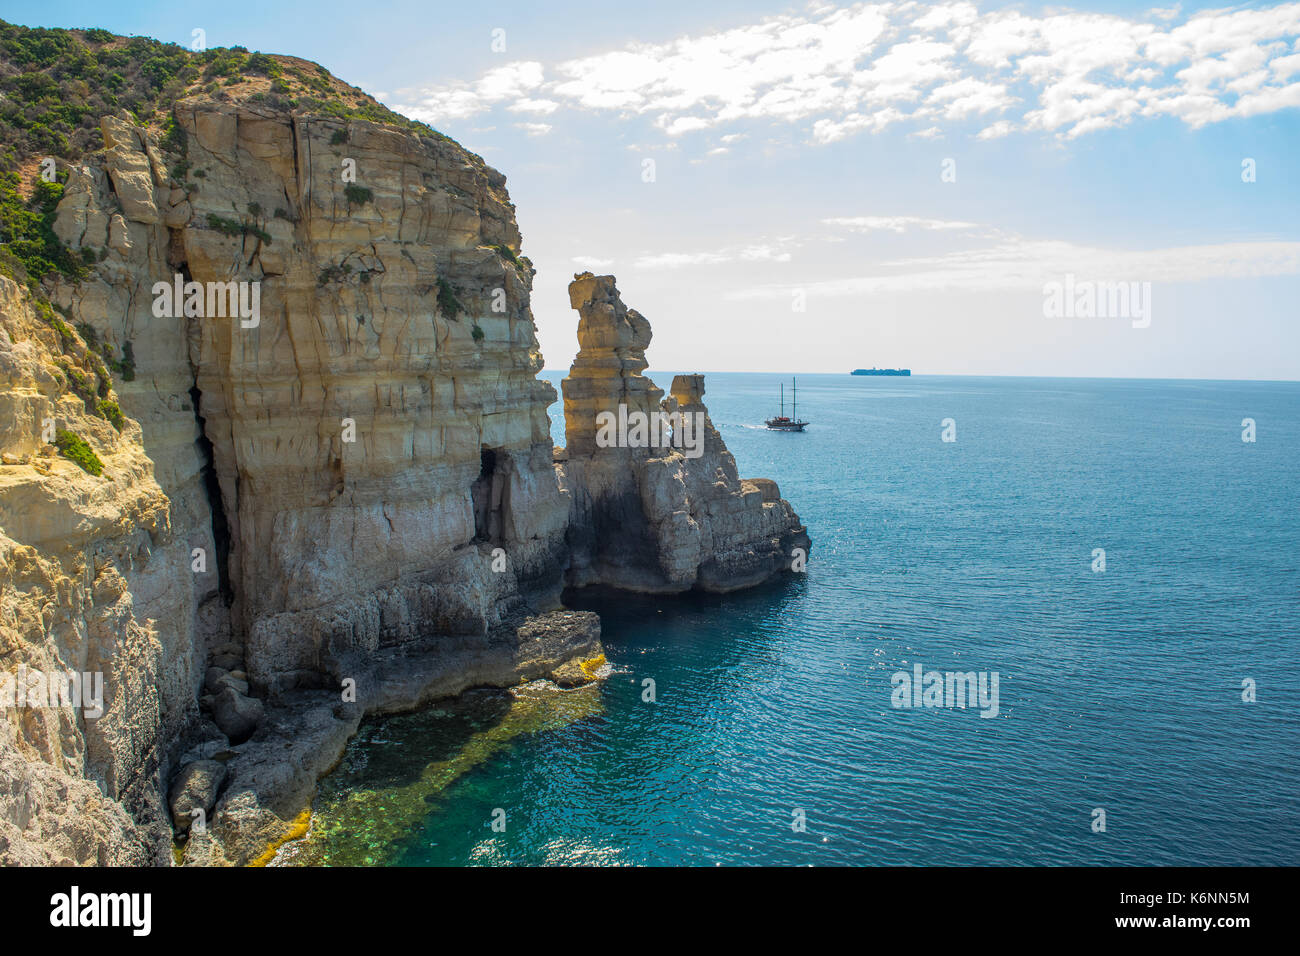 Maltesische cliff, cliff Erosion: wellenschnitt Plattform, Meer Höhle und Stacks. Nachweis von Cliff Rezession. Ein Handelsschiff auf dem Horizont und einer Yacht. Stockfoto